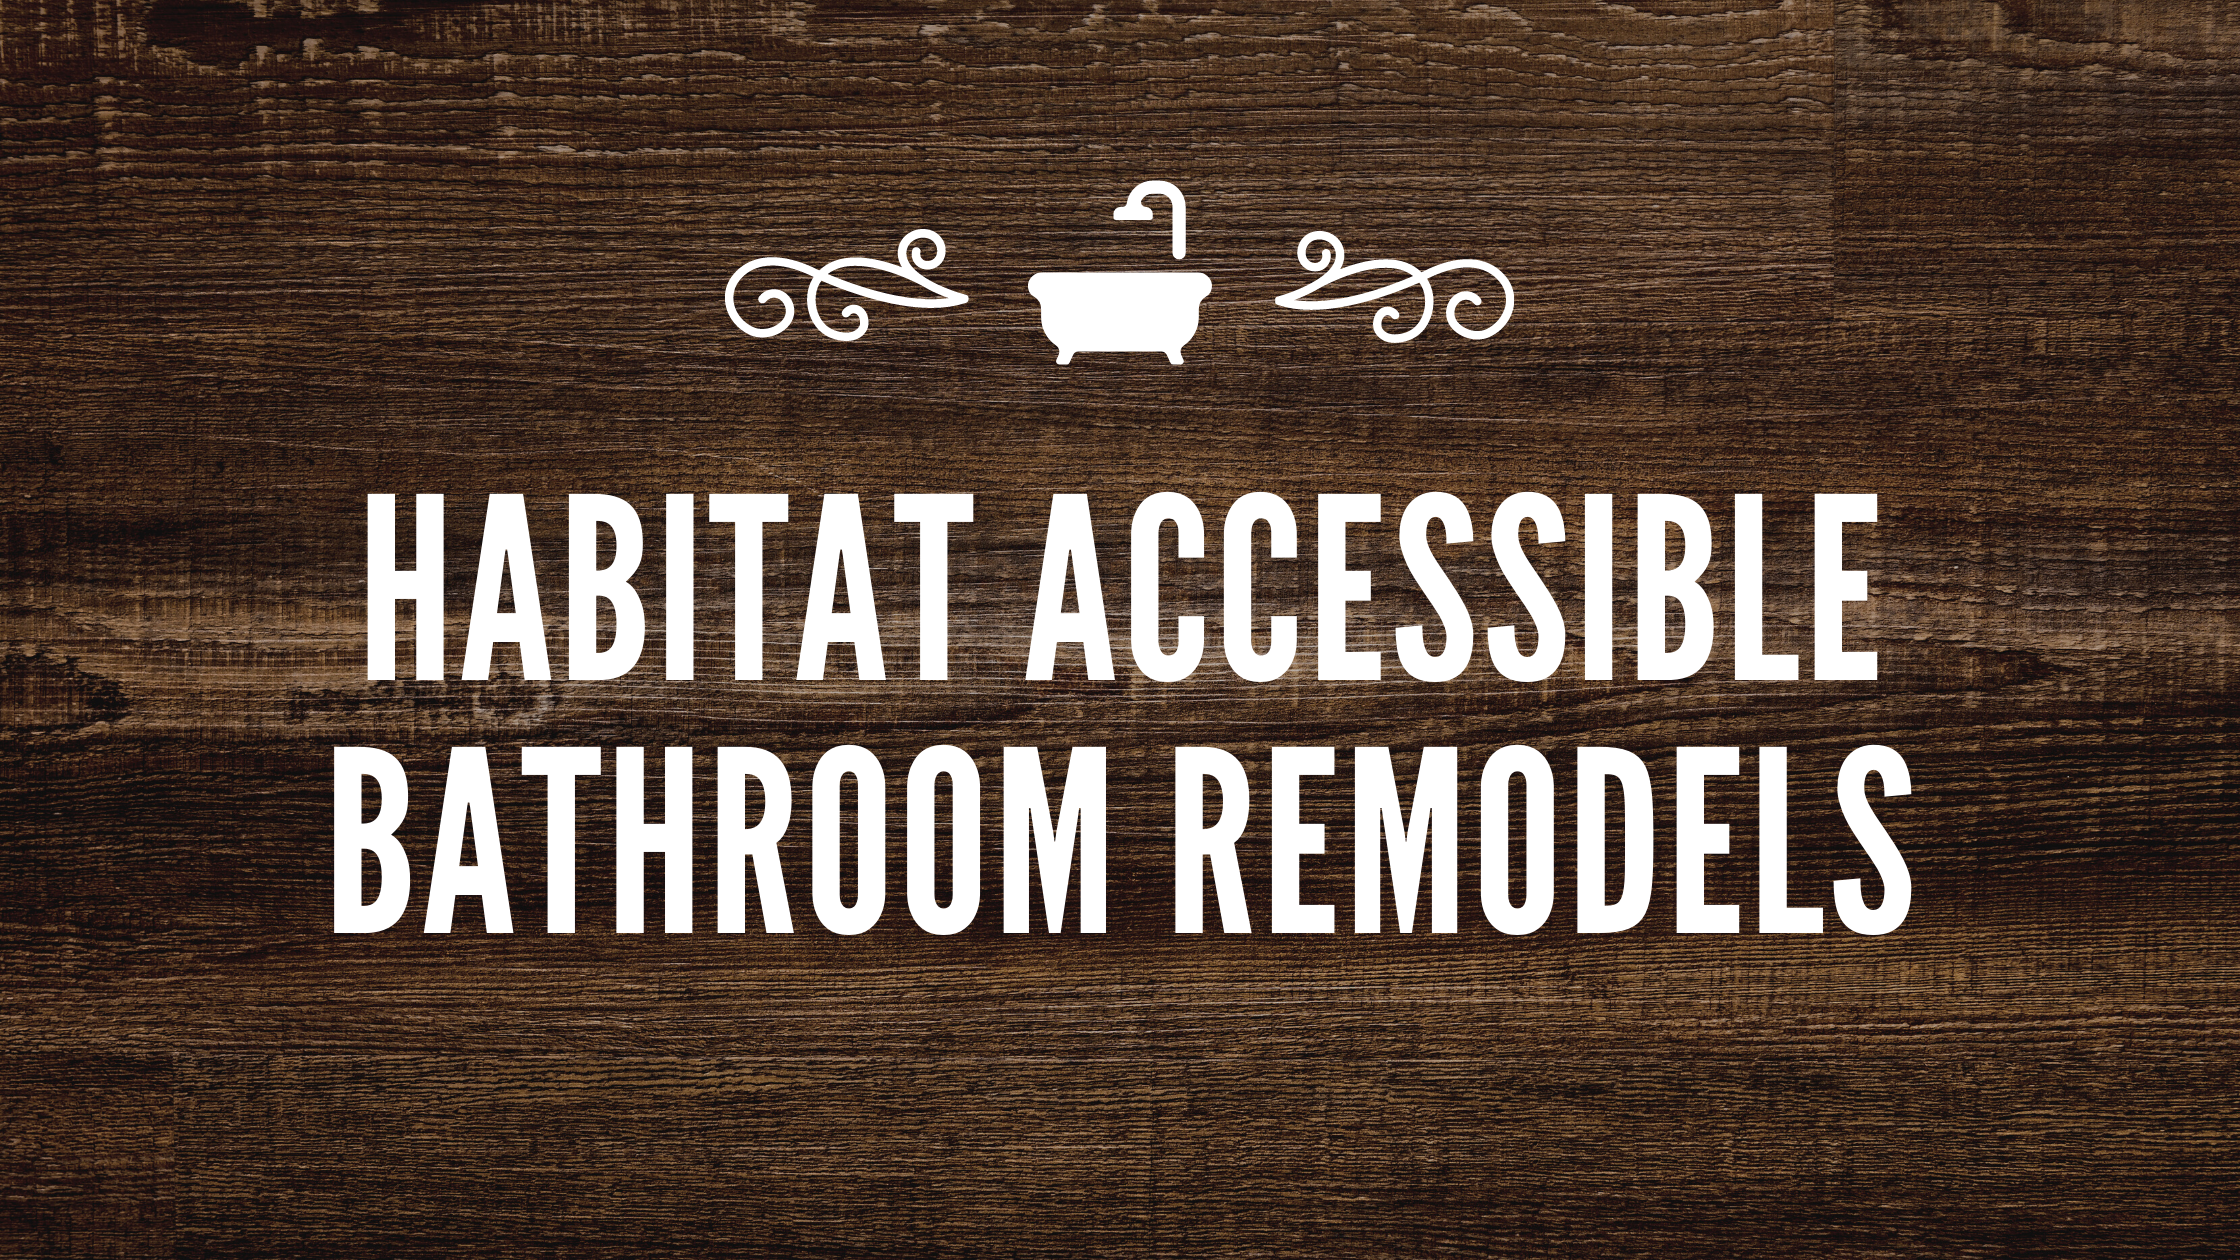 Habitat Accessible Bathroom Remodels